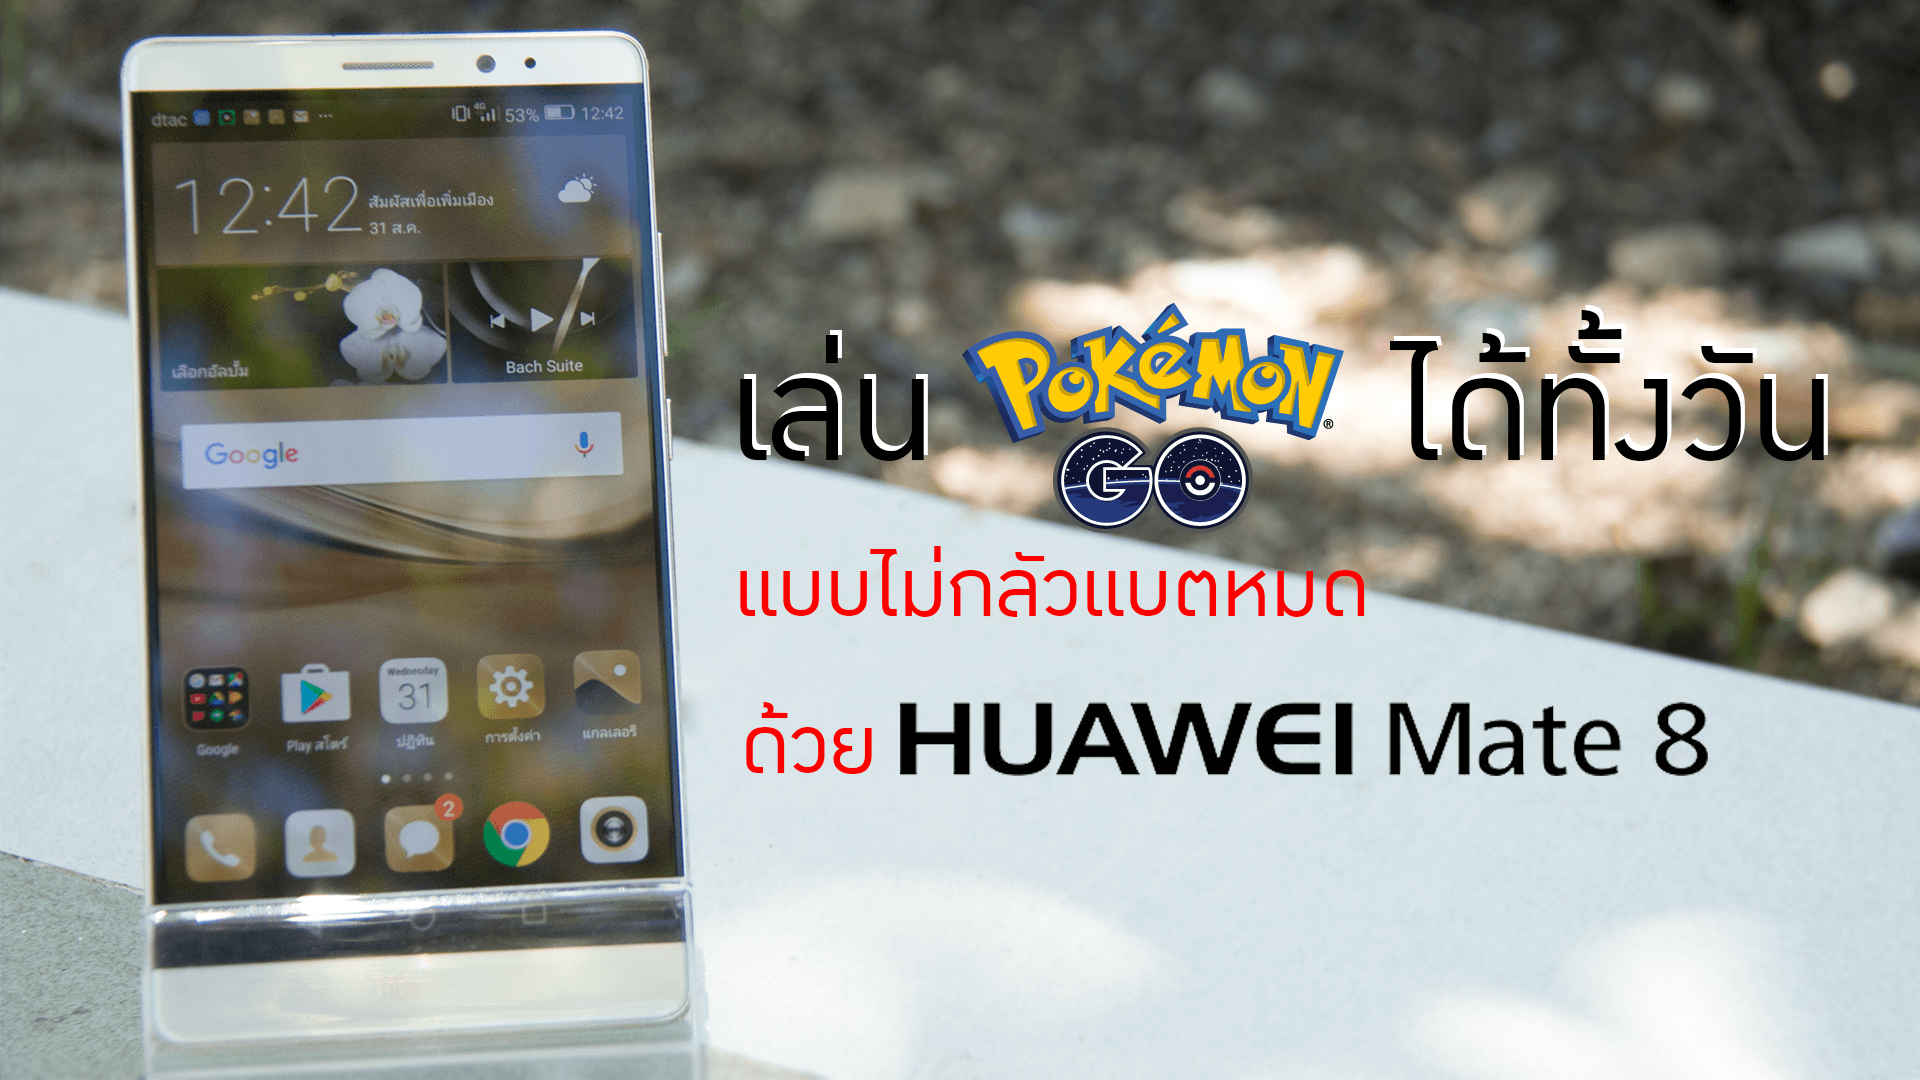 มินิรีวิว Huawei Mate 8 ฉบับเอาไปจับ Pokemon!